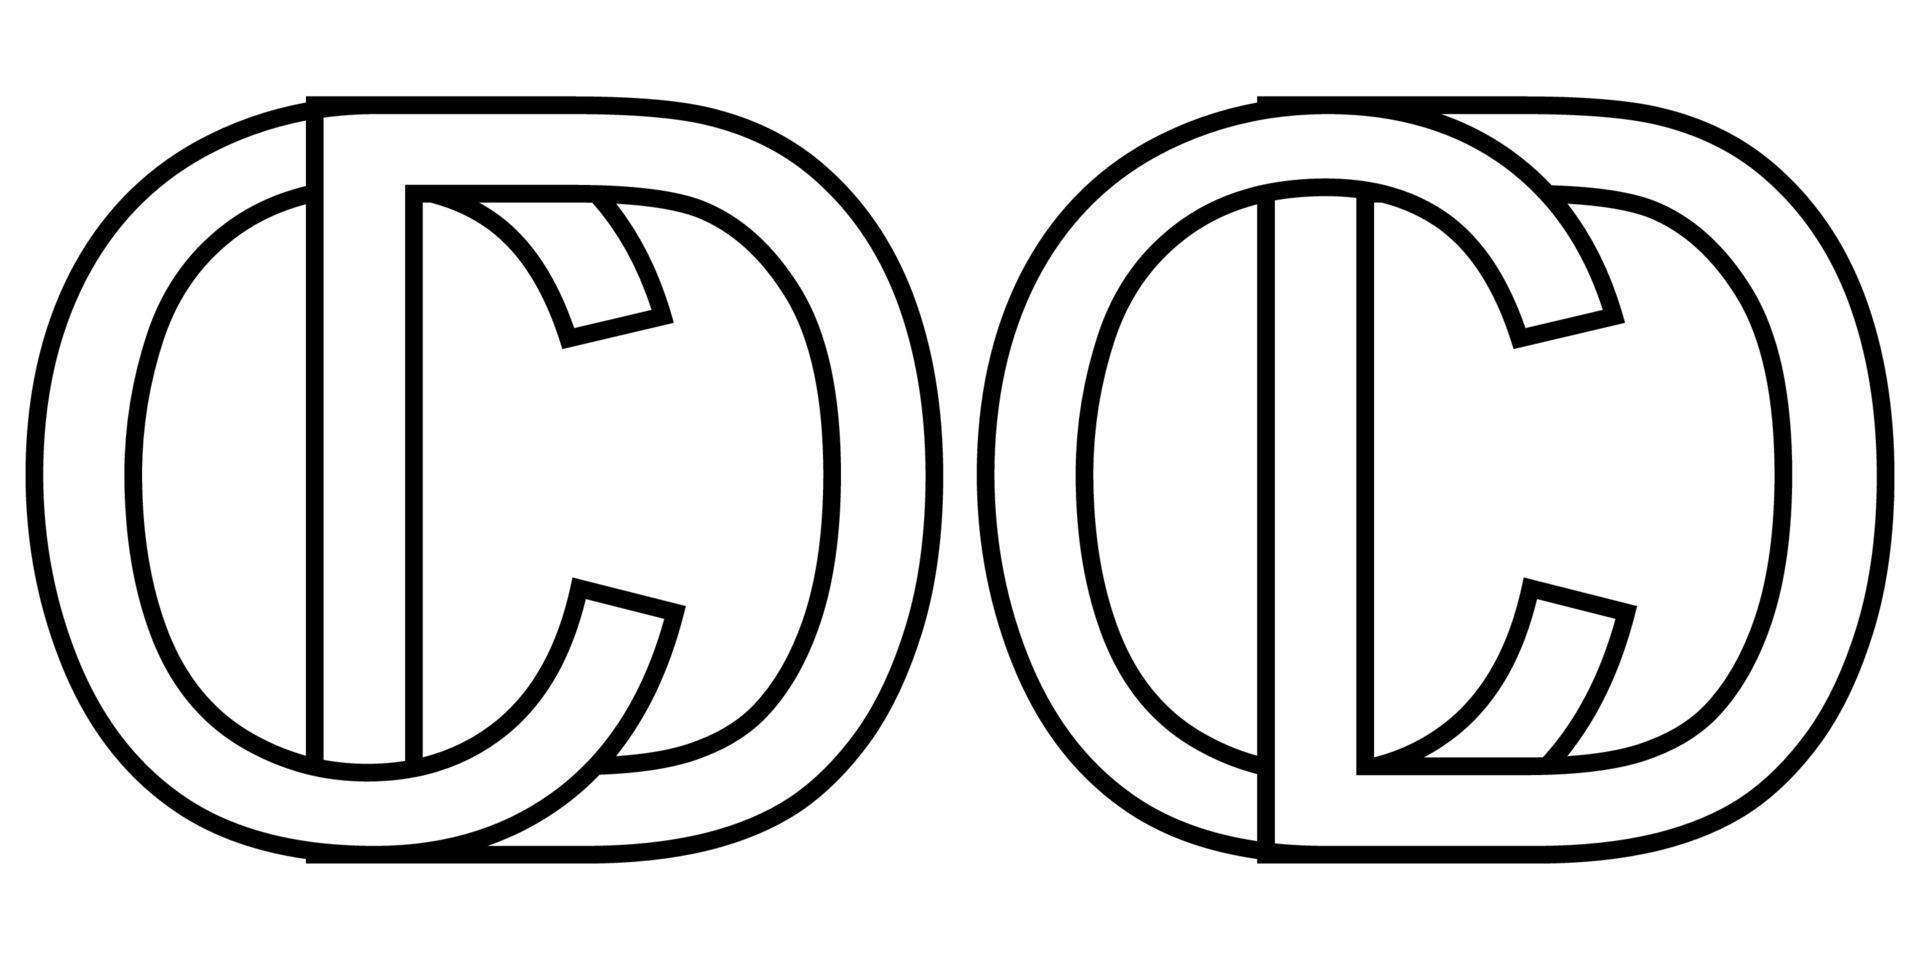 logo cartello dc e CD icona cartello Due interlacciato lettere d, c vettore logo dc, CD primo capitale lettere modello alfabeto d, c